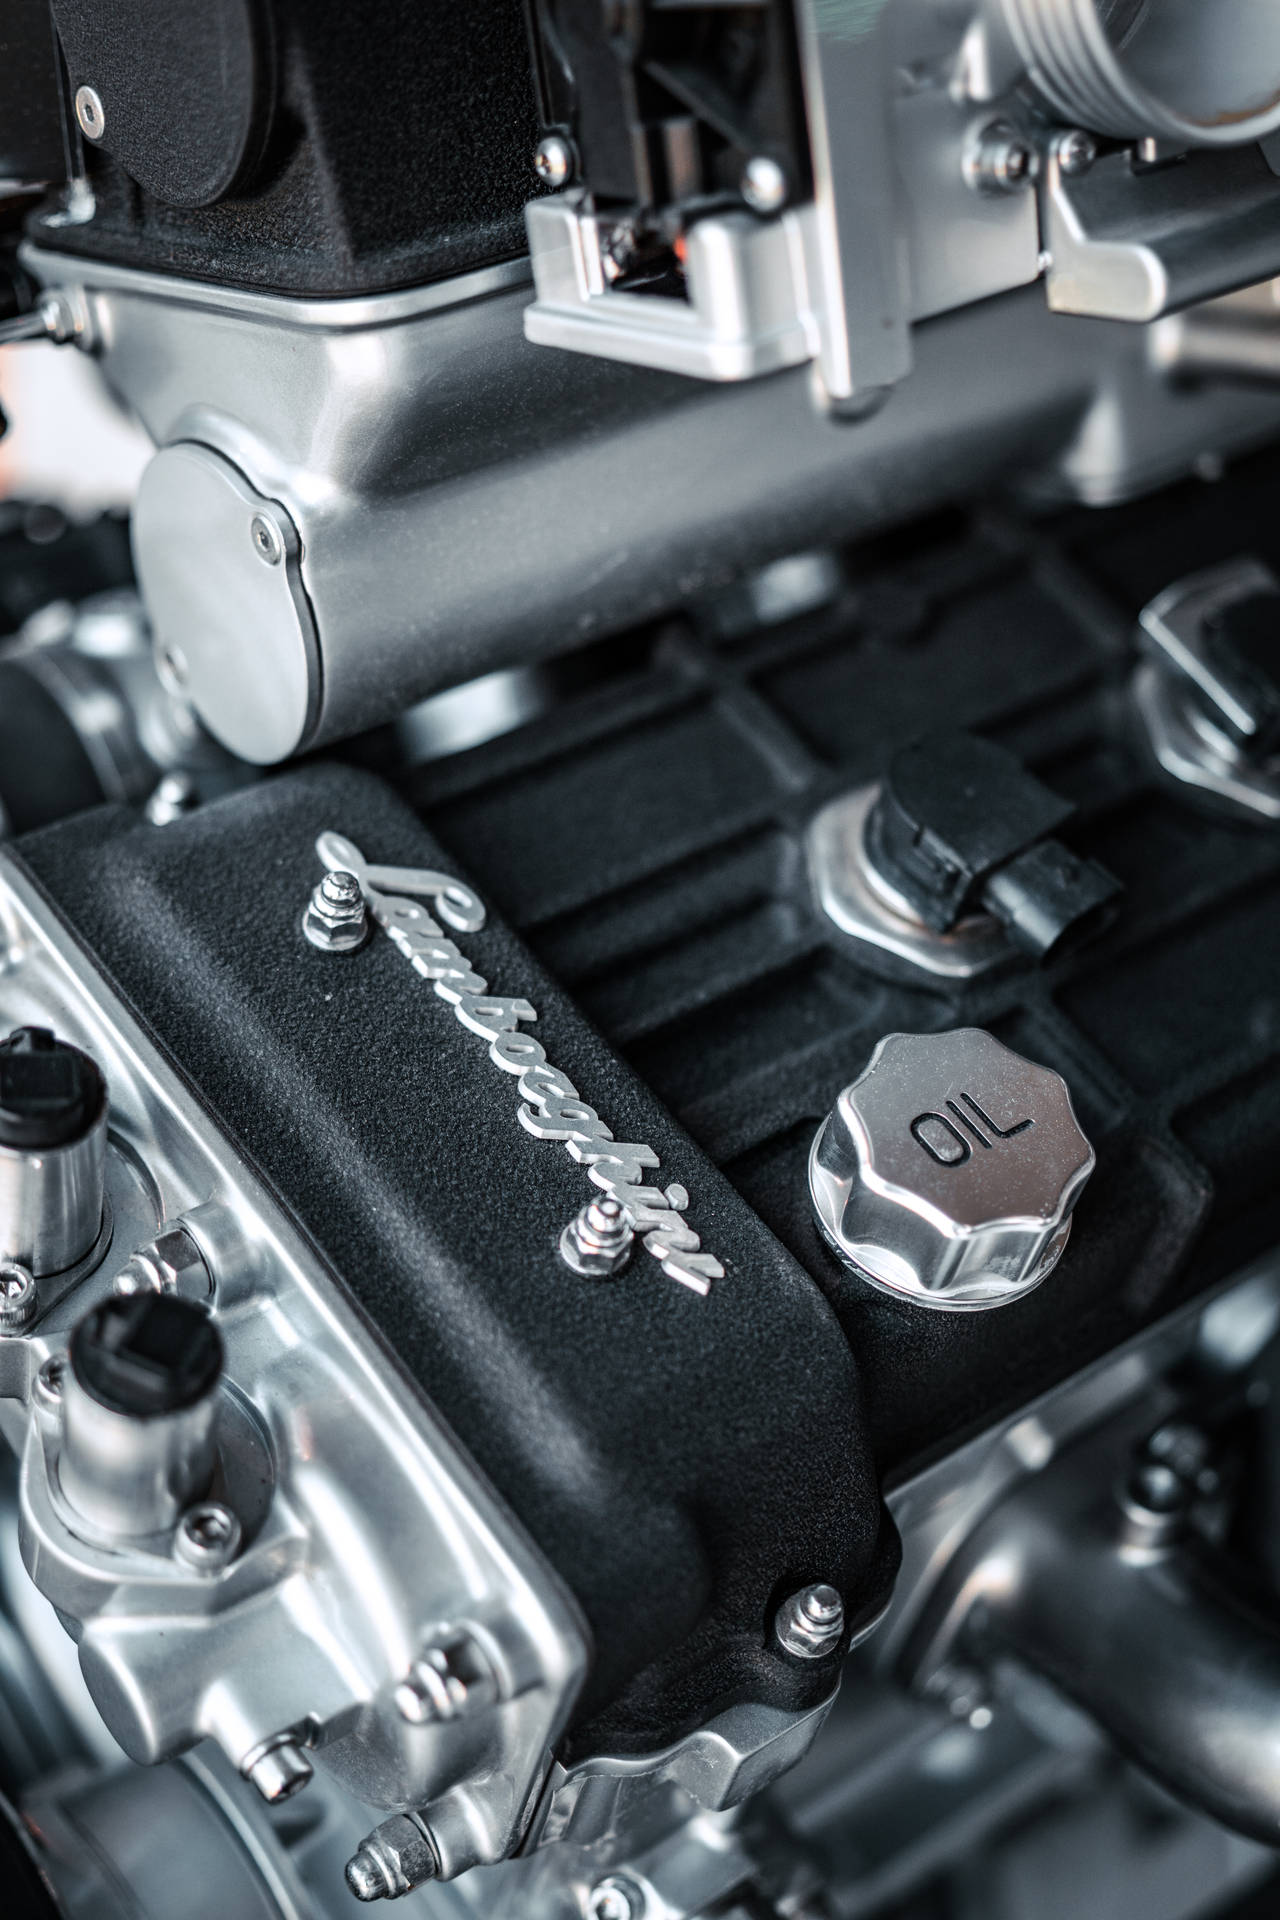 4k Lamborghini Engine Background